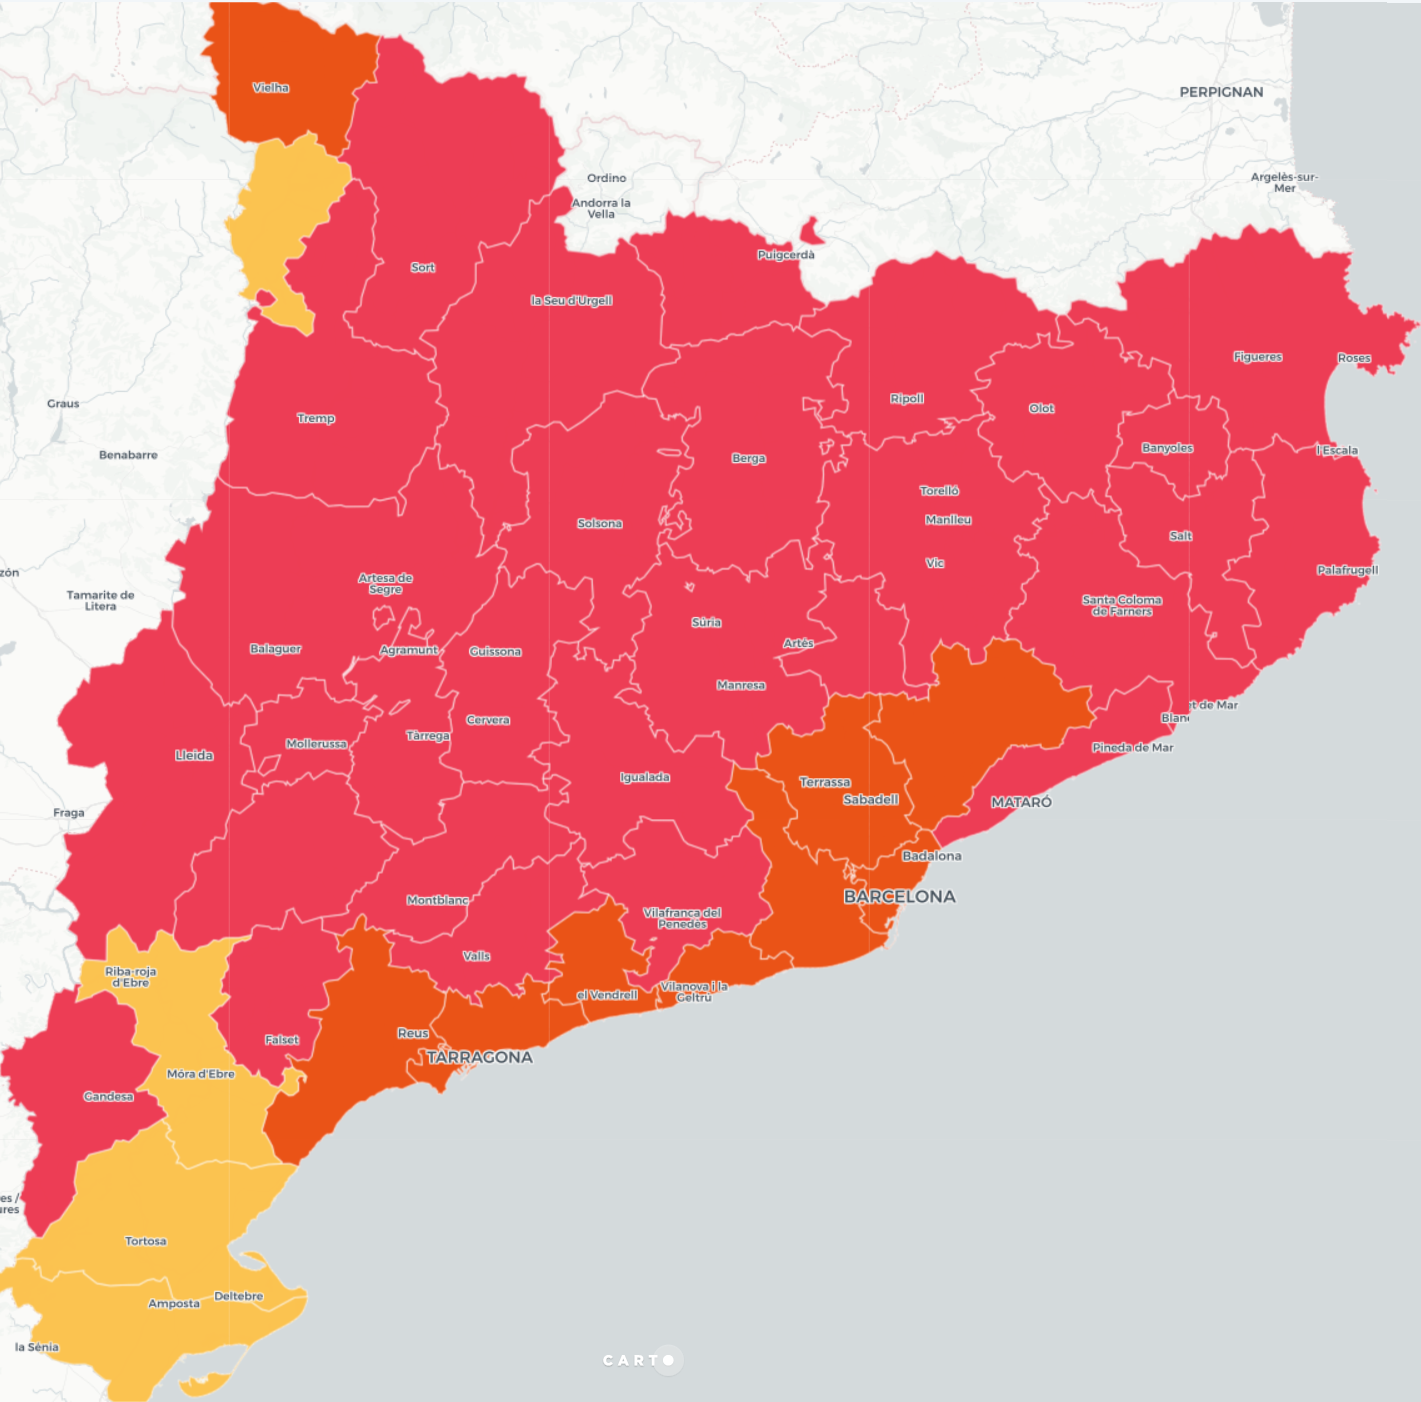 MAPA: El partit més votat per comarca